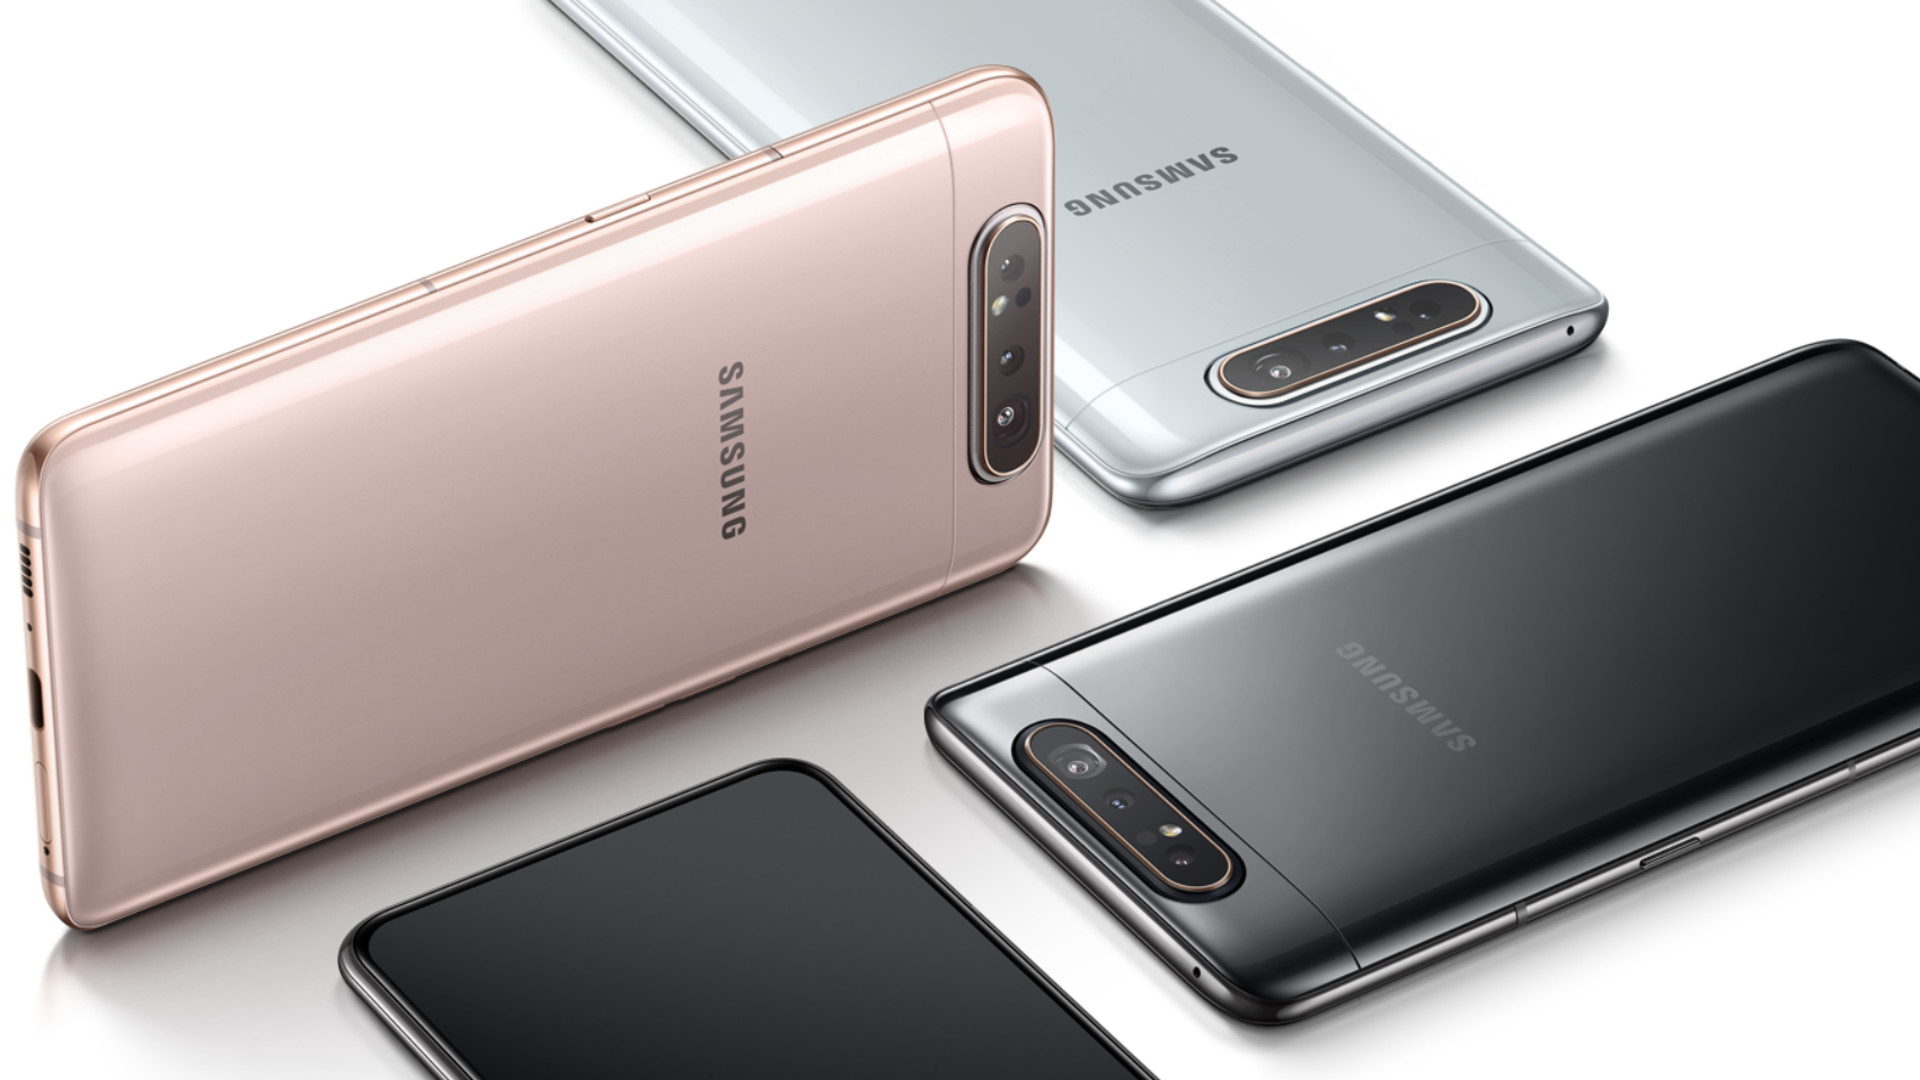 รวมโปรจอง Samsung Galaxy A80 จาก AIS, Truemove H และ dtac รับส่วนลดค่าเครื่องสูงสุดถึง 13,100 บาท